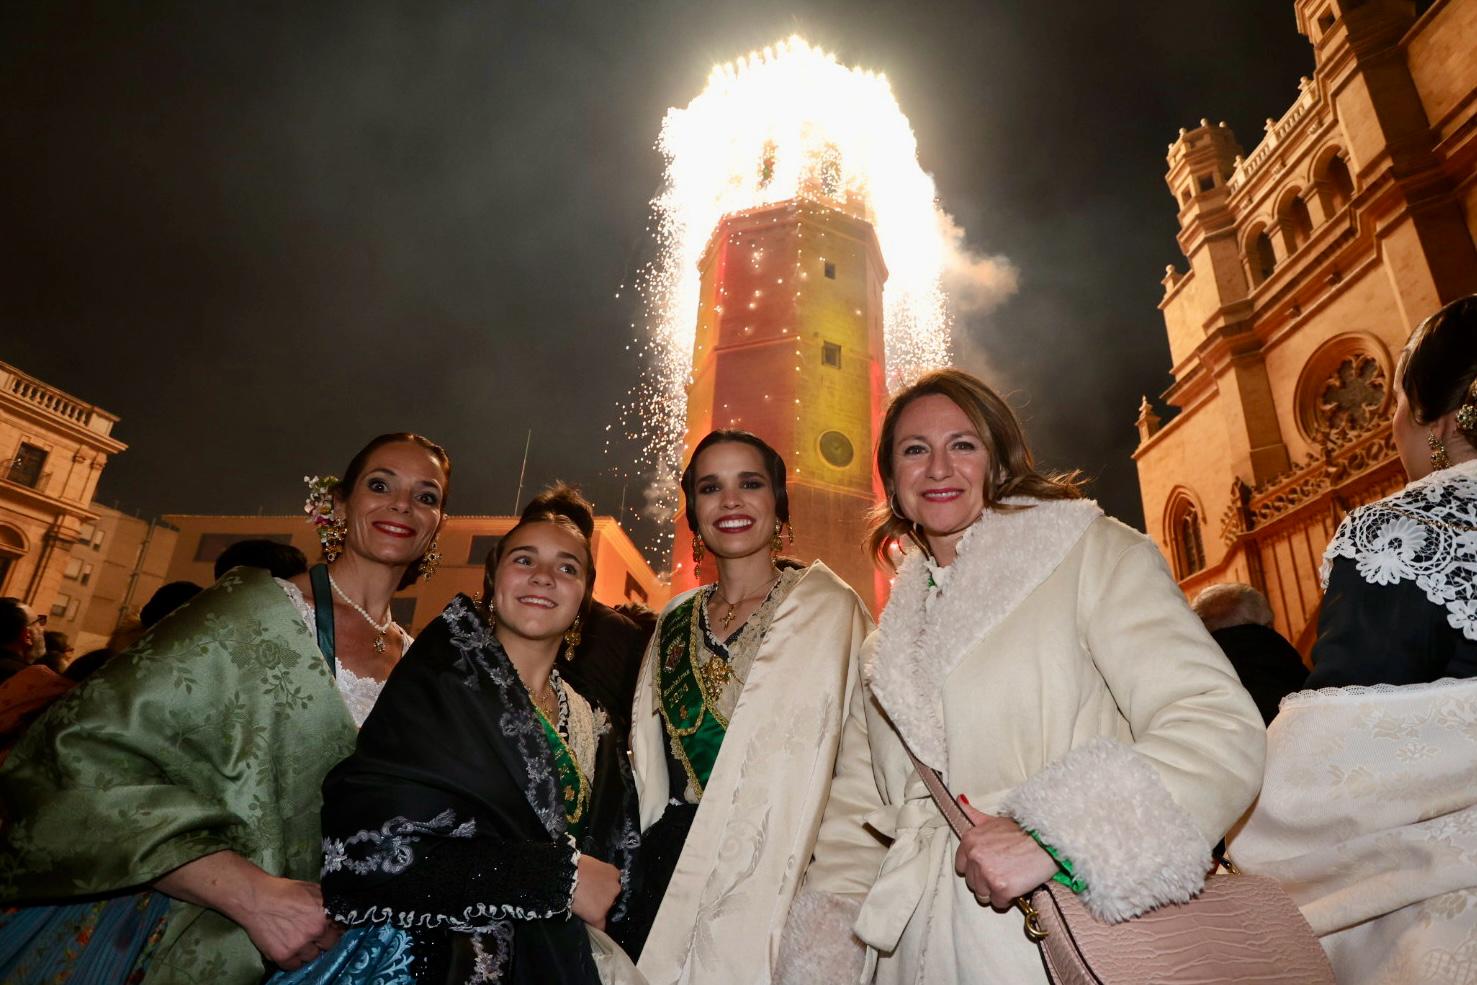 La “Enfarolà” del Fadrí il·lumina el símbol per excel·lència de Castelló amb un espectacular joc de llums i pirotècnia